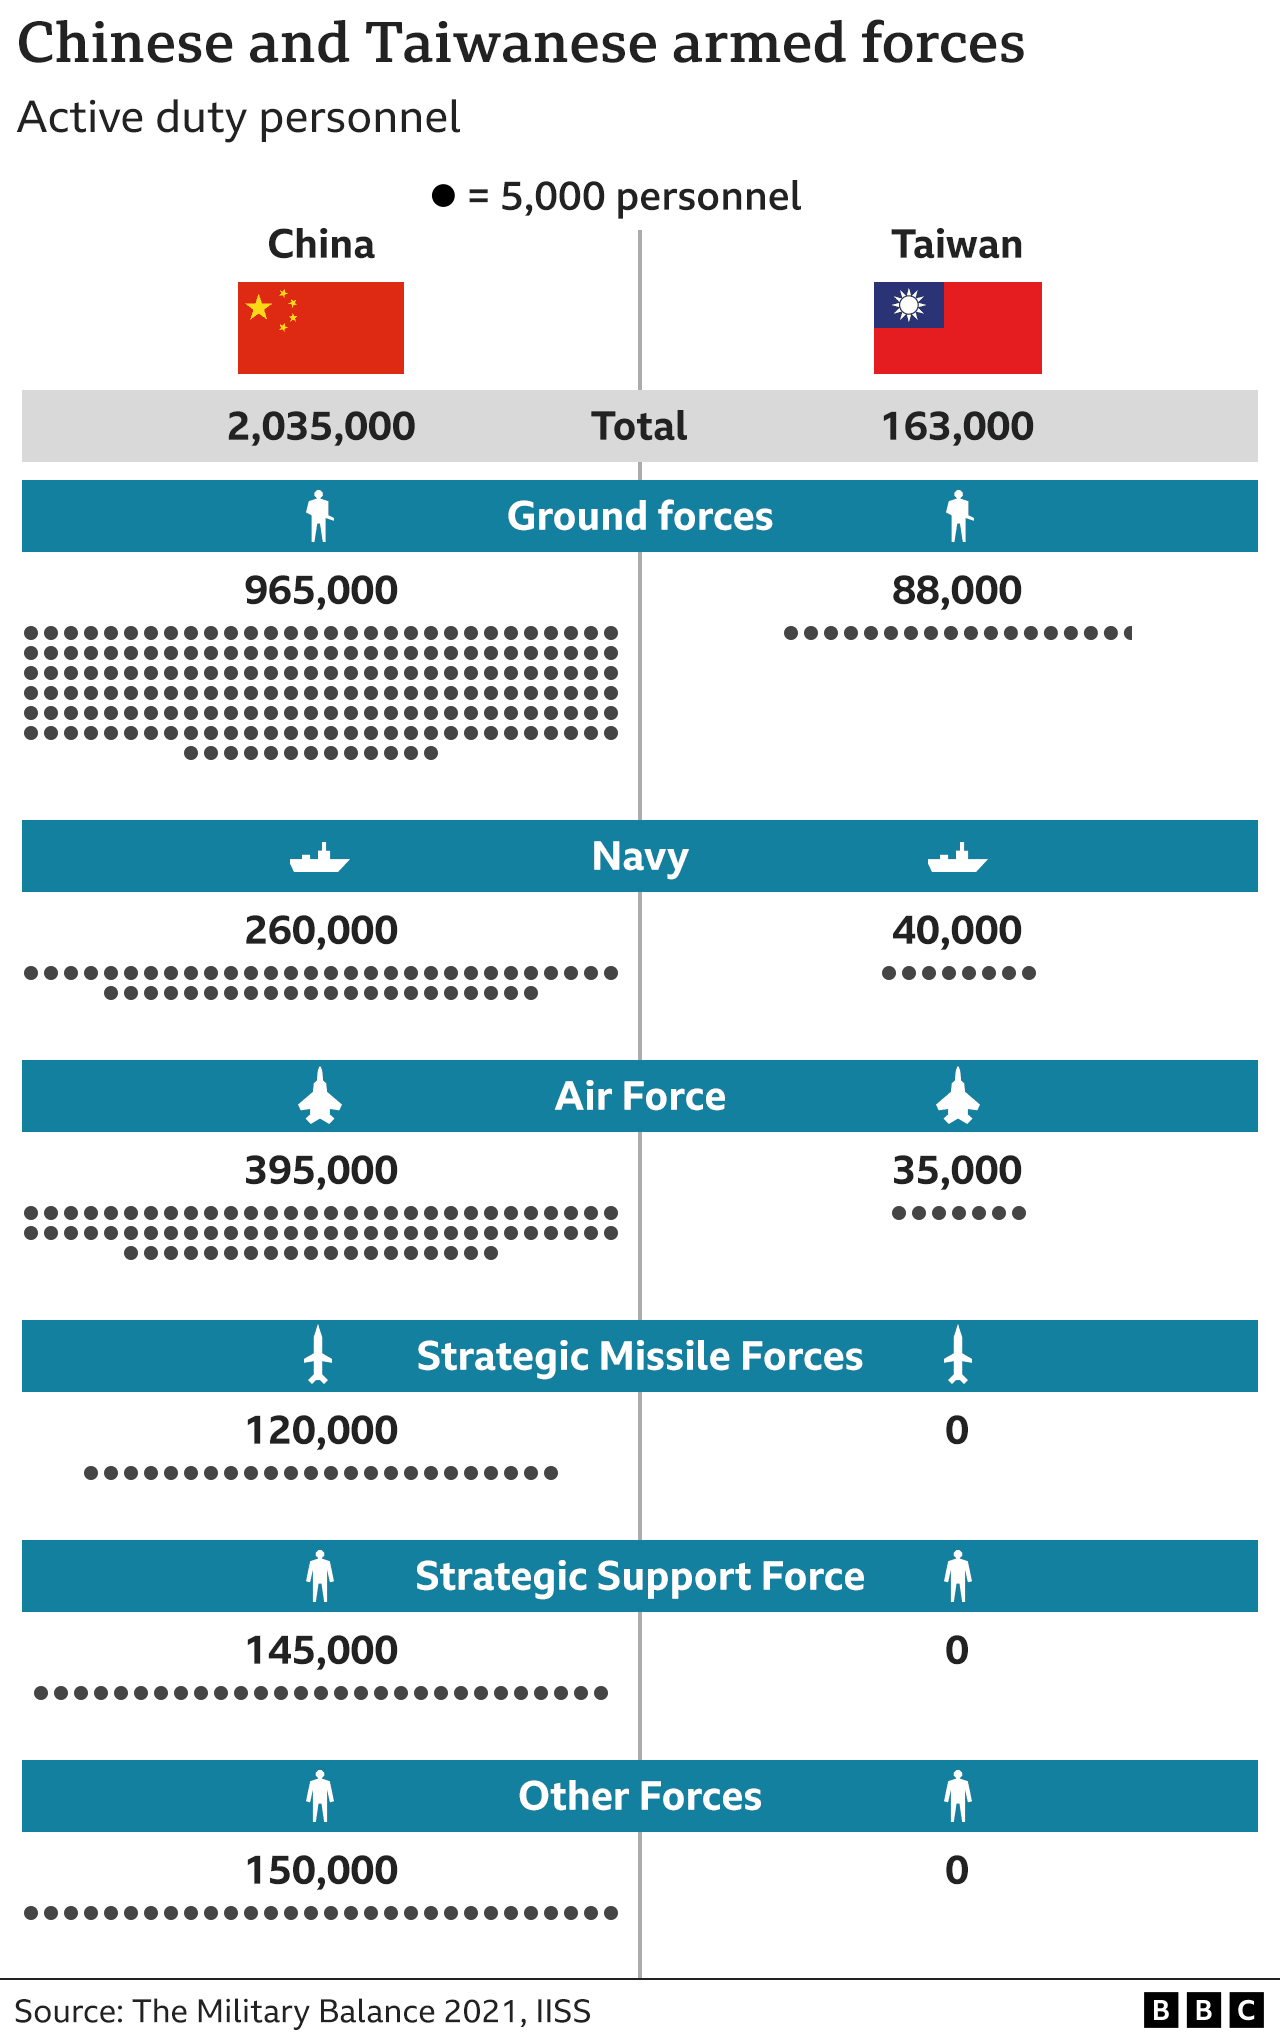 Grafik personel militer aktif Tiongkok dan Taiwan